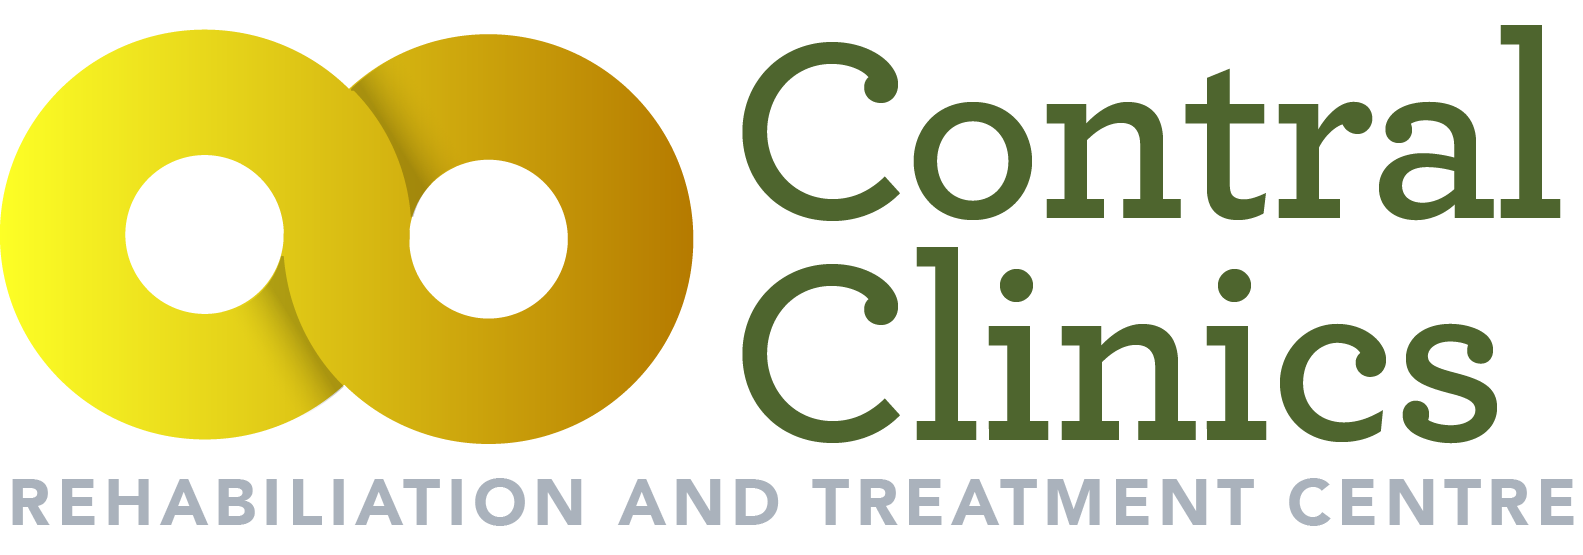 Contral Clinics